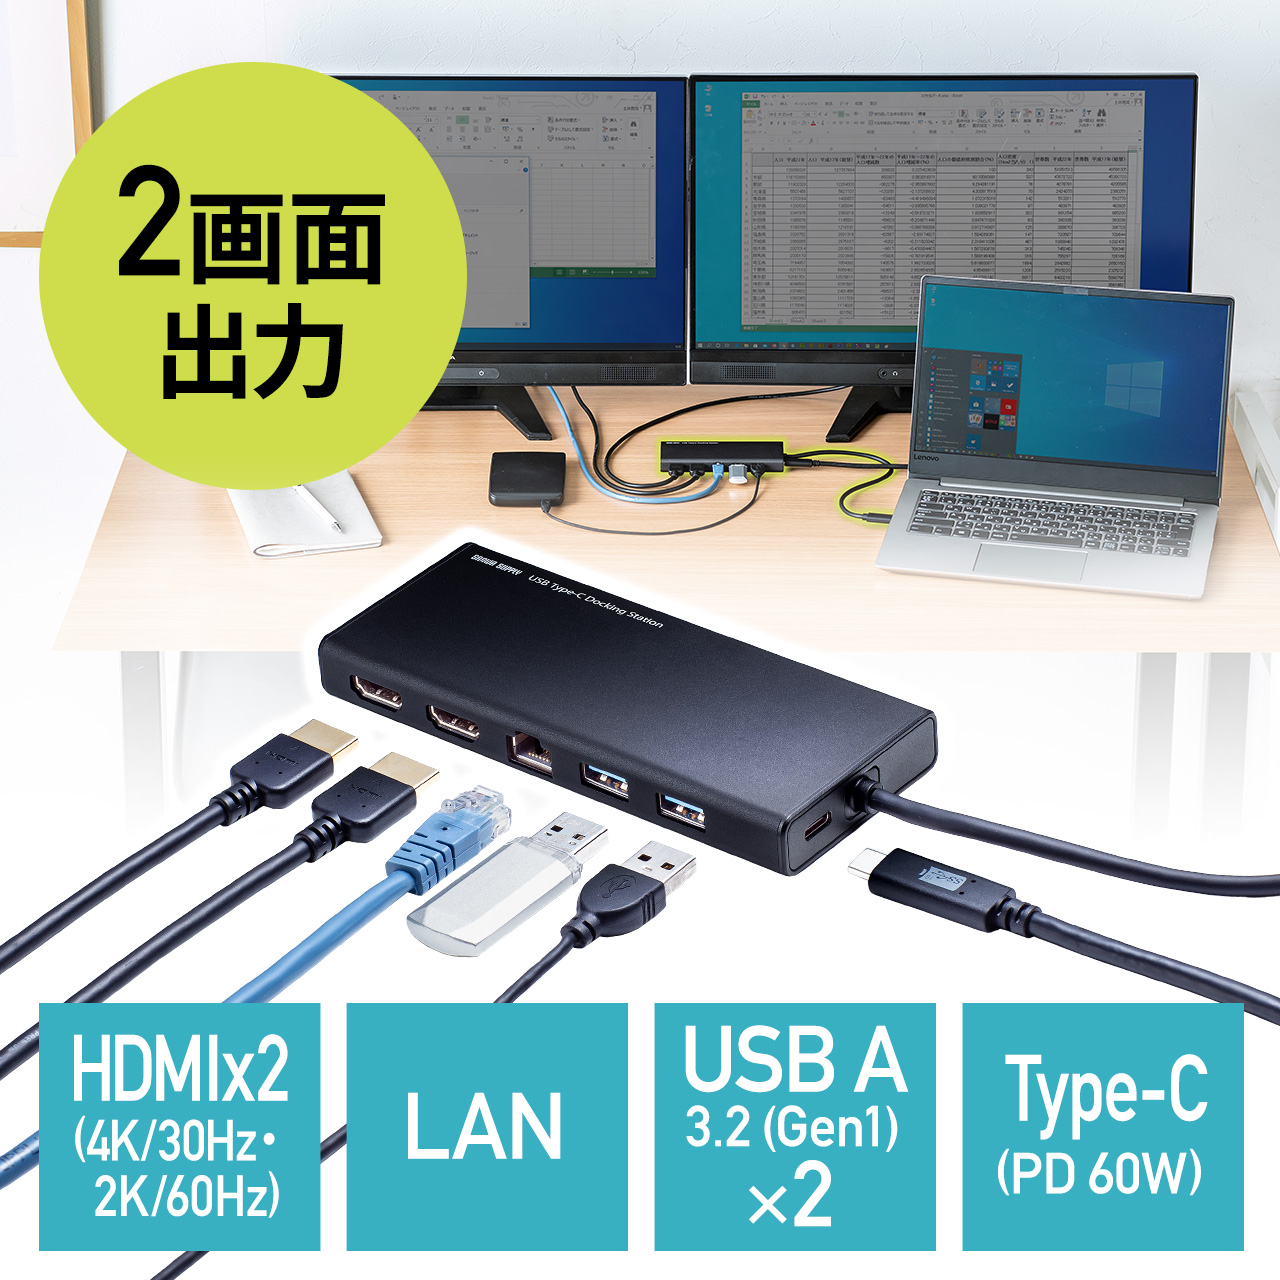 USB Type-Cドッキングステーション ハブ 2画面出力 トリプルディスプレイ HDMI 2ポート 4K/30Hz PD60W LAN  ブラック｜サンプル無料貸出対応 400-HUBC099BK |サンワダイレクト